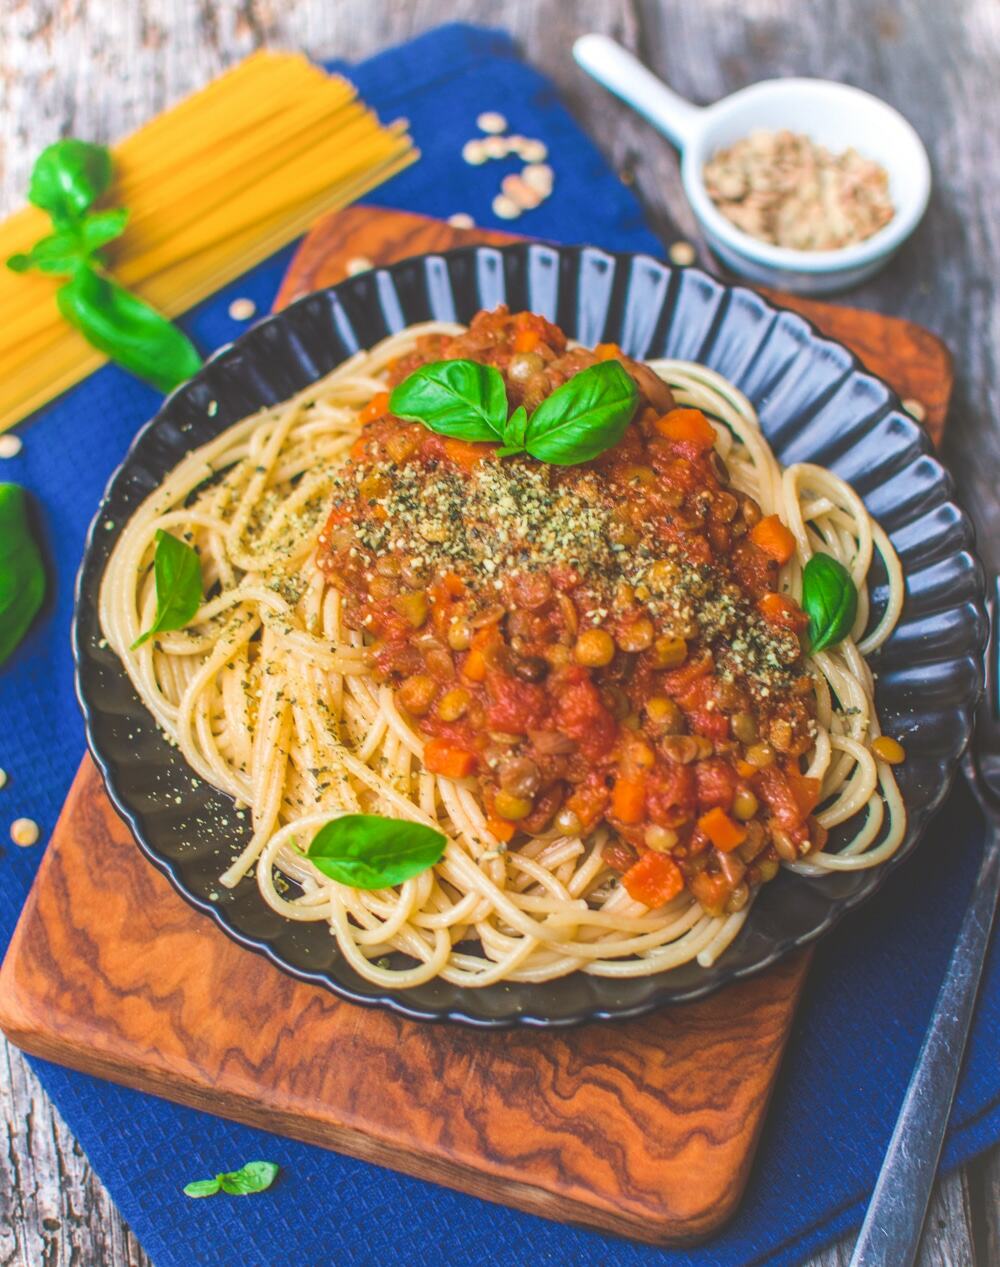 Vegan Lentil Bolognese Pasta Recipe | Protein-Packed Sauce | World of Vegan | #bolognese #vegan #sauce #pasta #protein #italian #dinner #worldofvegan